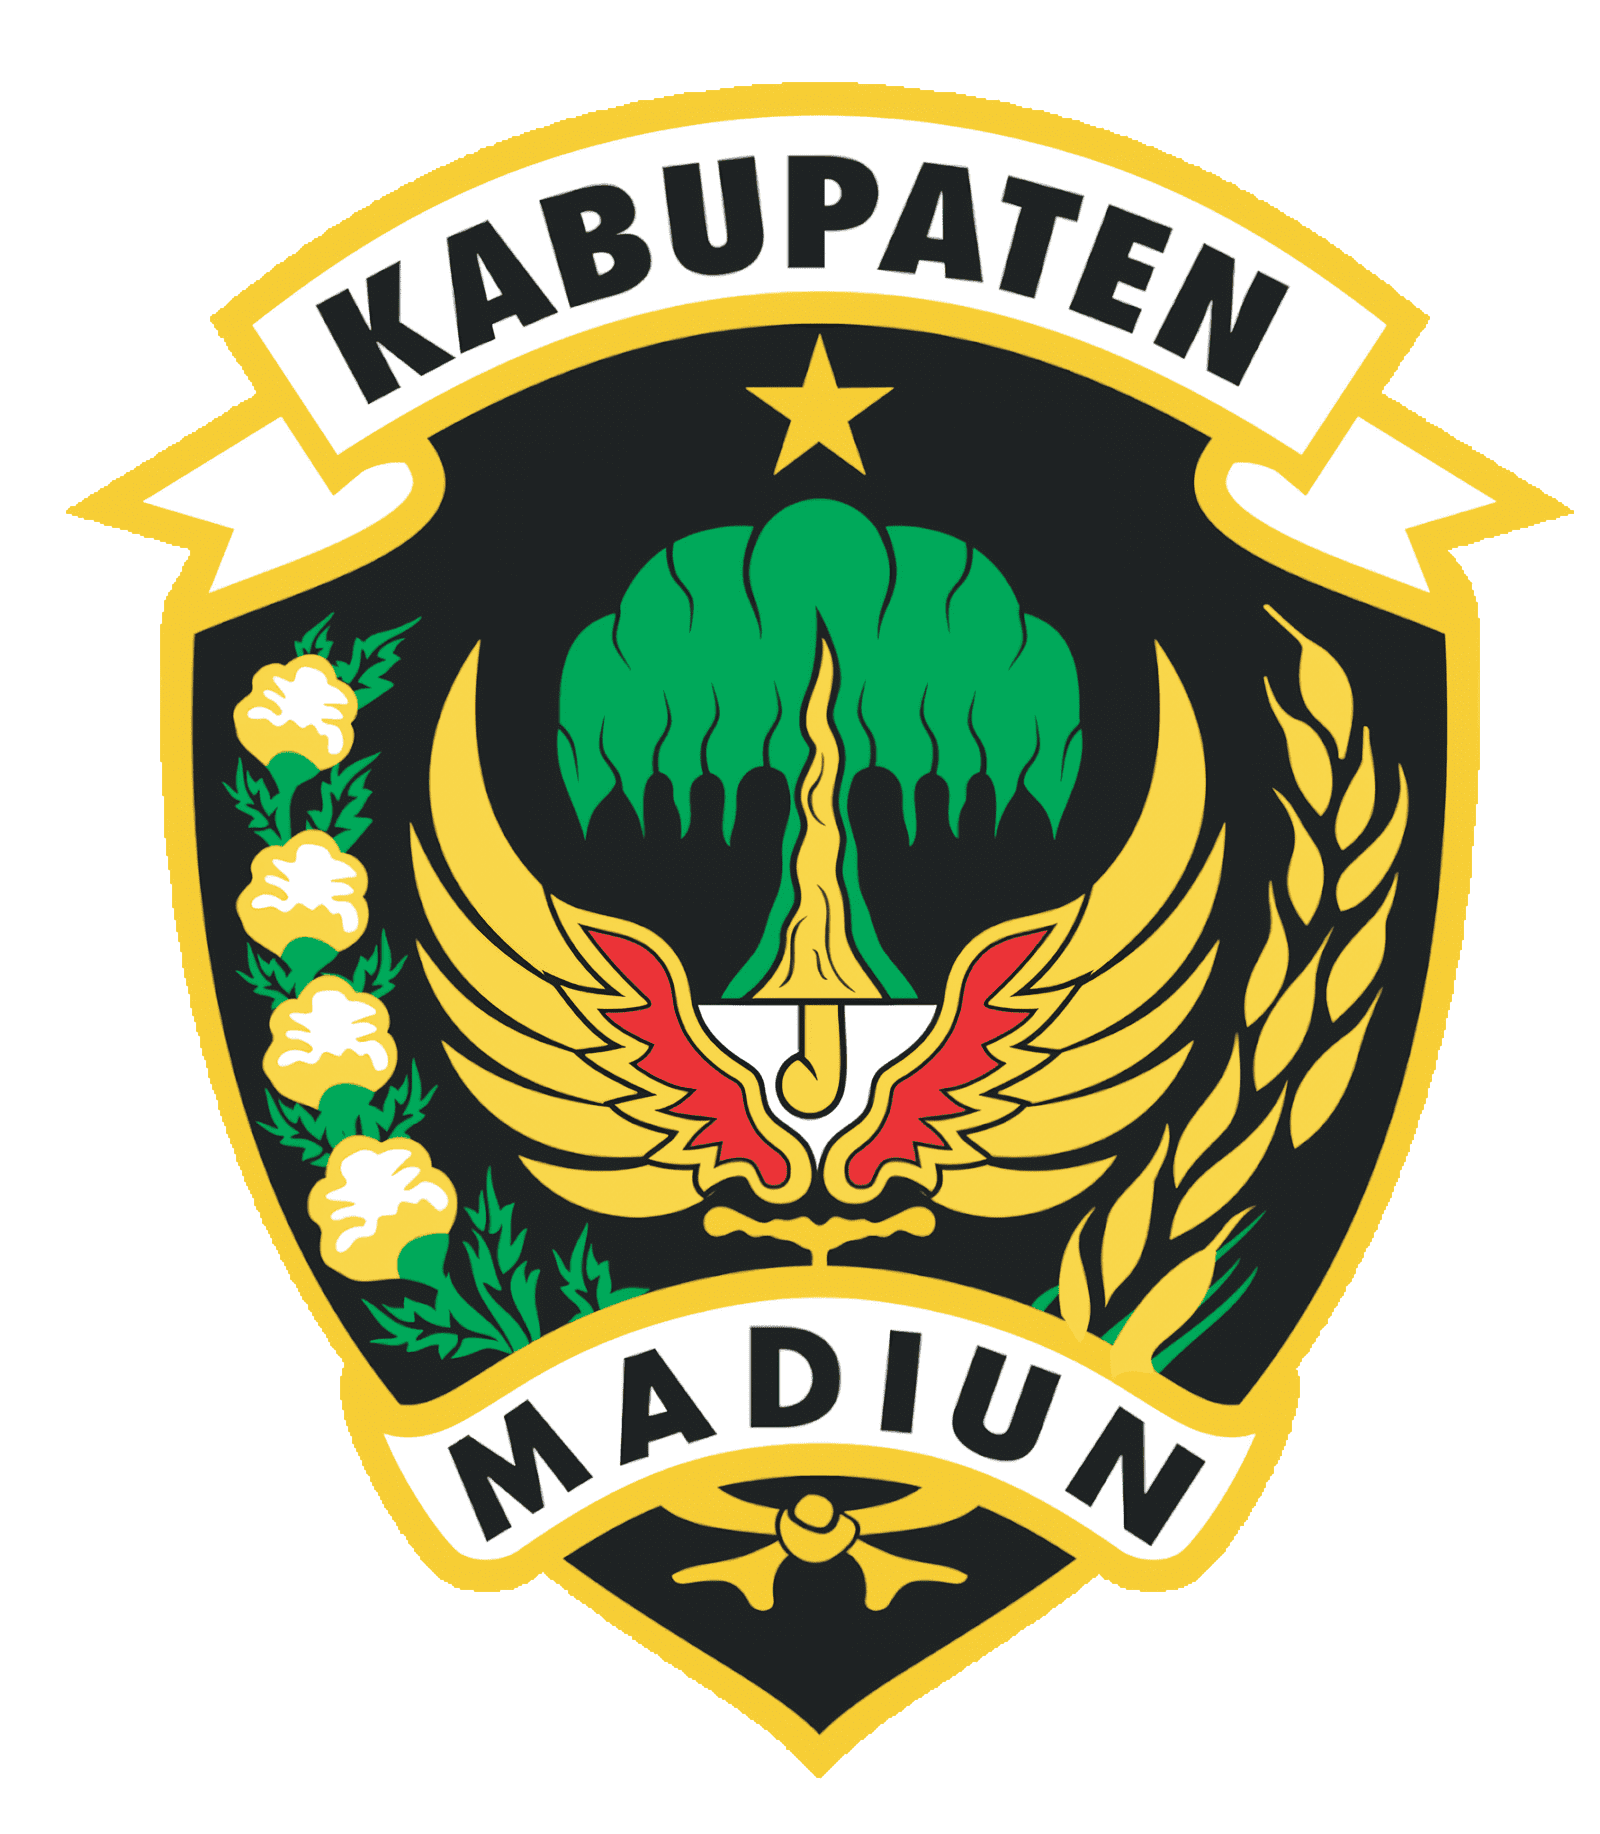 logo_kabupaten_madiun